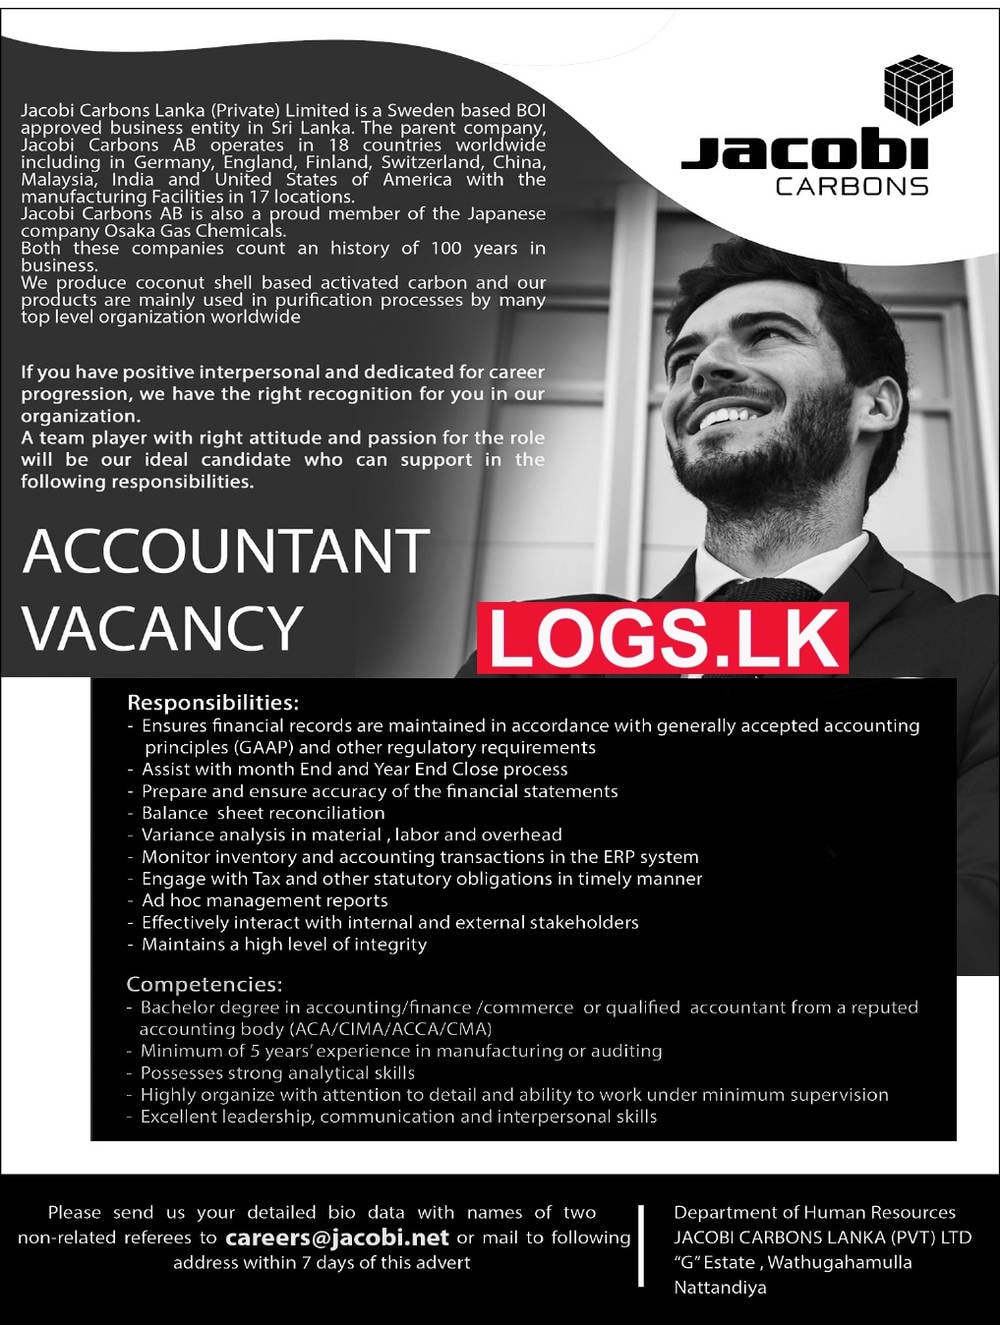 Accountant Job Vacancy in Jacobi Carbon Lanka (Pvt) Ltd Jobs Vacancies Details, Application Form Download